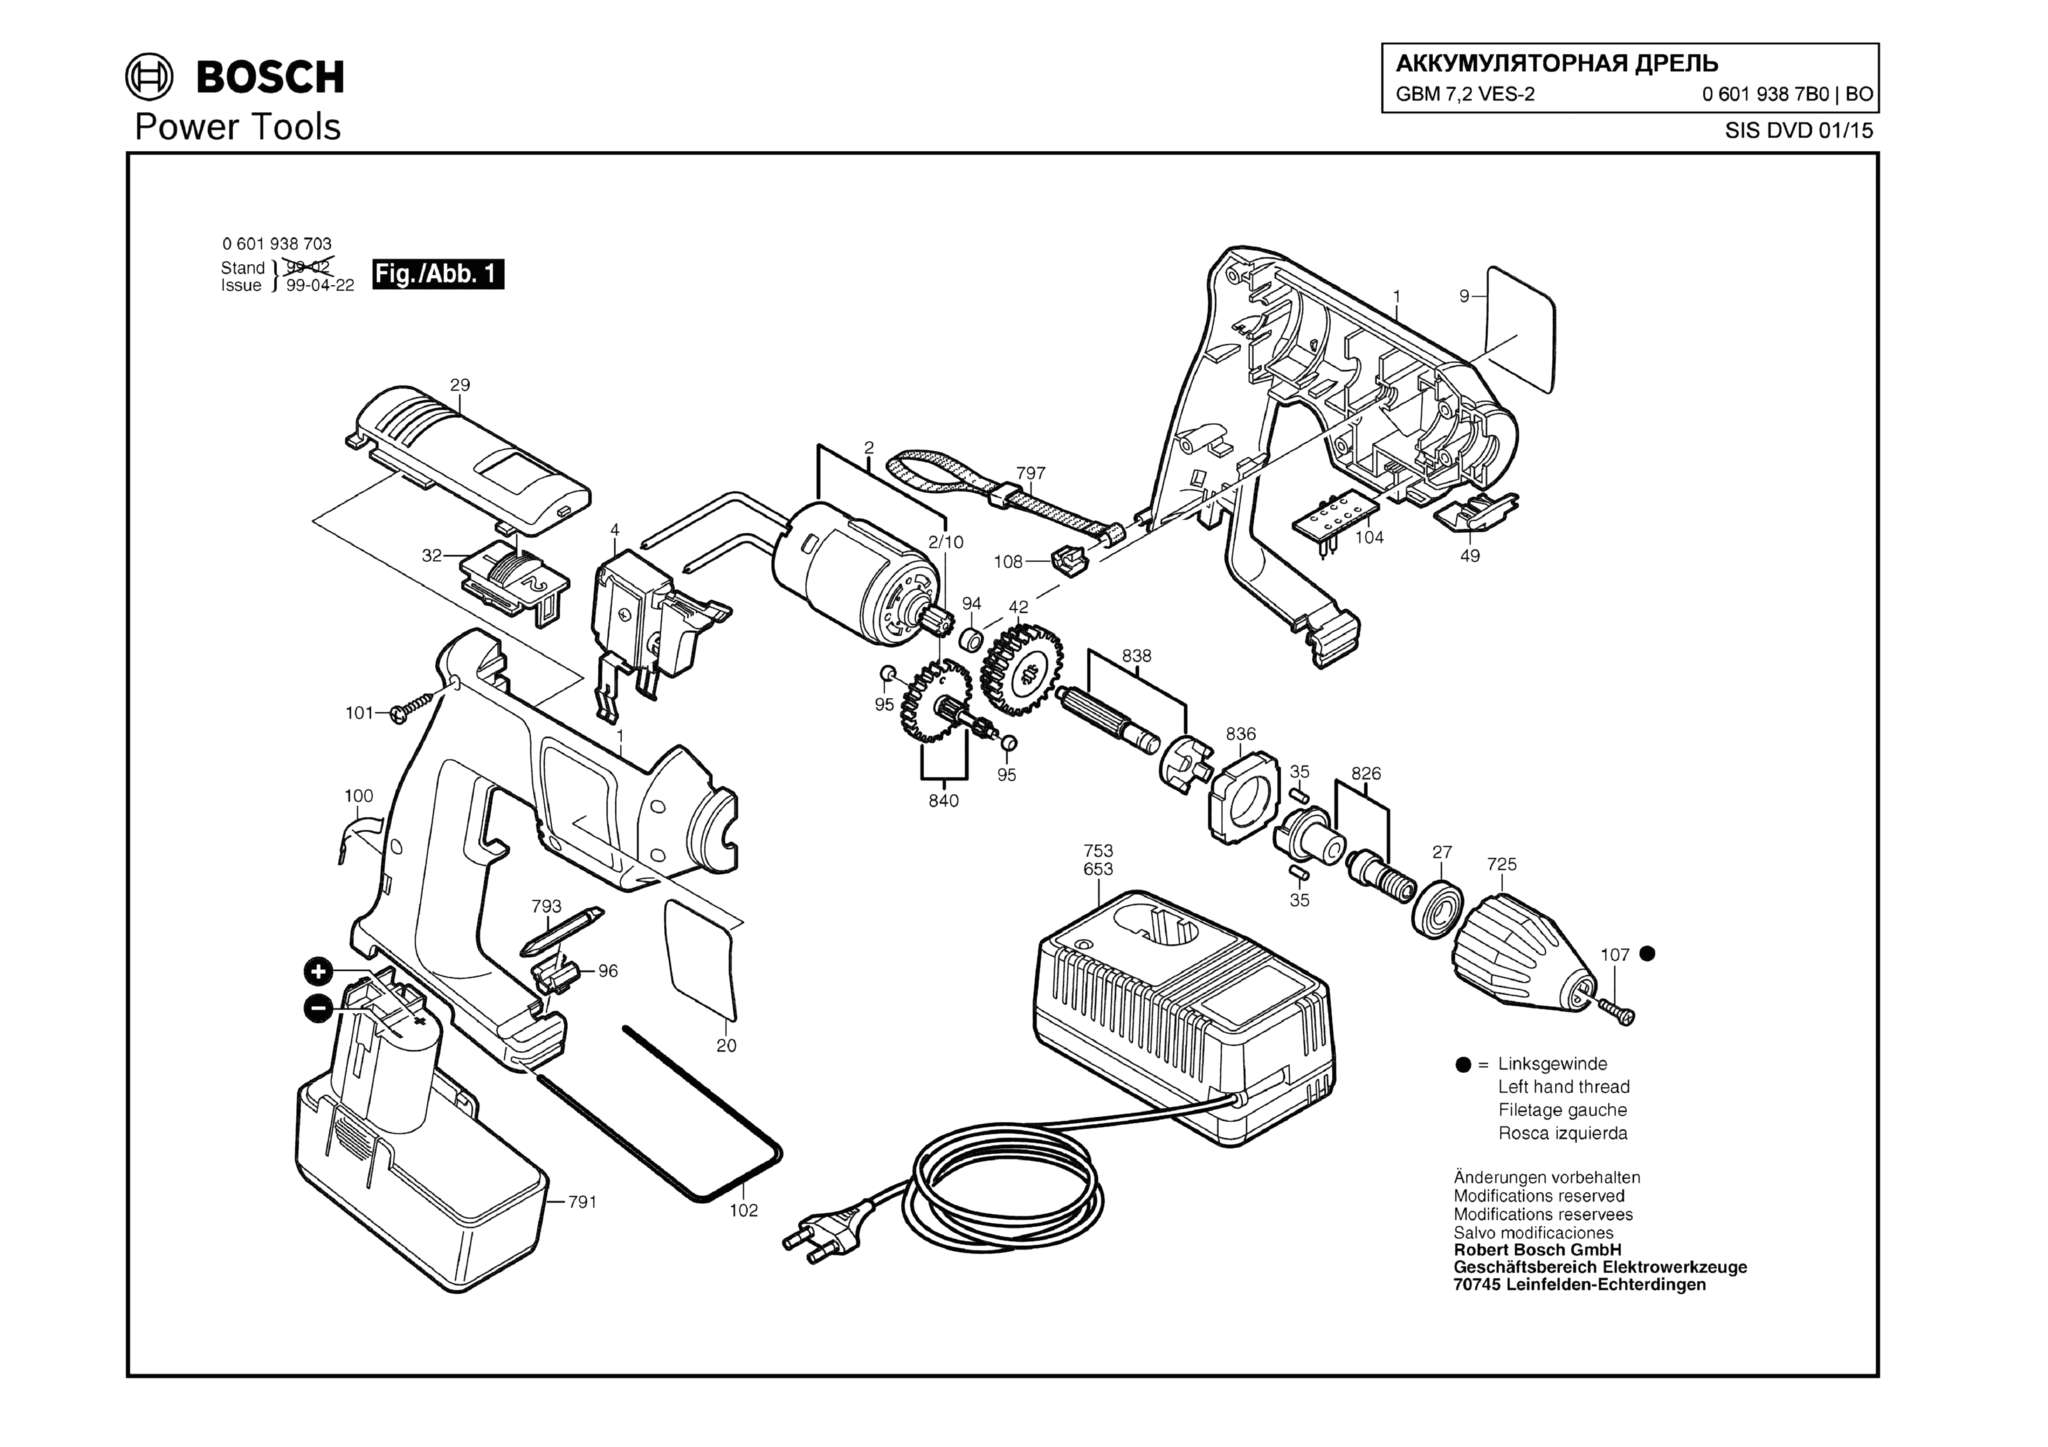 Запчасти, схема и деталировка Bosch GBM 7,2 VES-2 (ТИП 06019387B0)